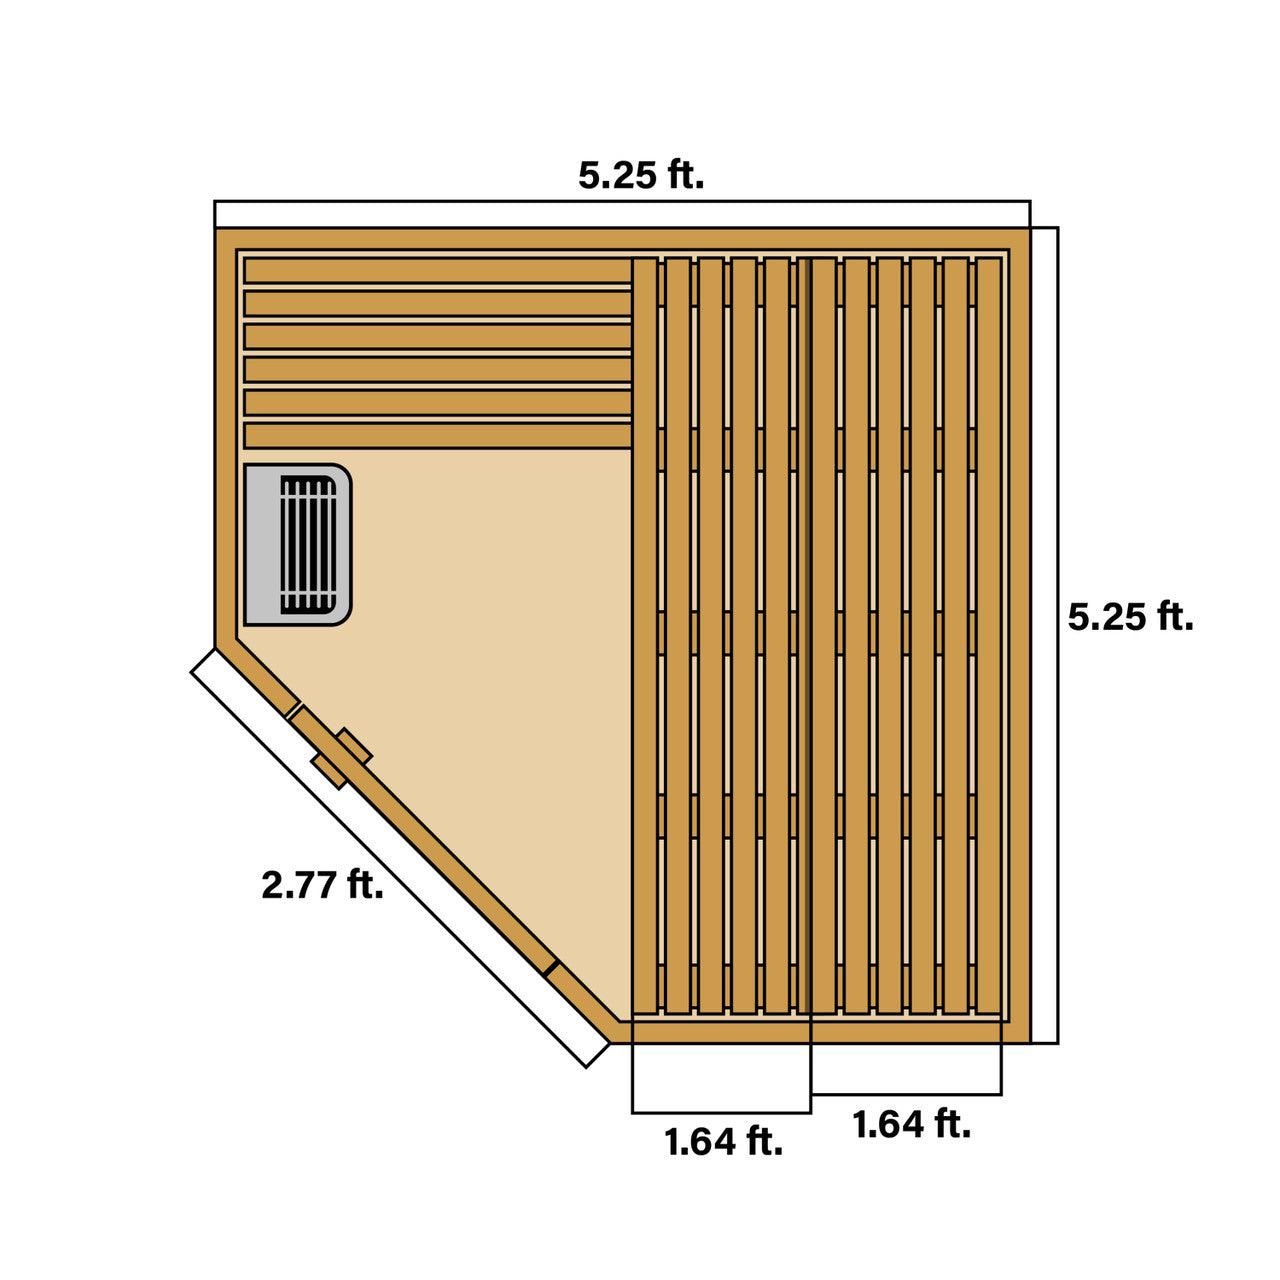 Aleko Canadian Hemlock Wet Dry Indoor Sauna - 4.5 kW ETL Certified Heater - 4 Person